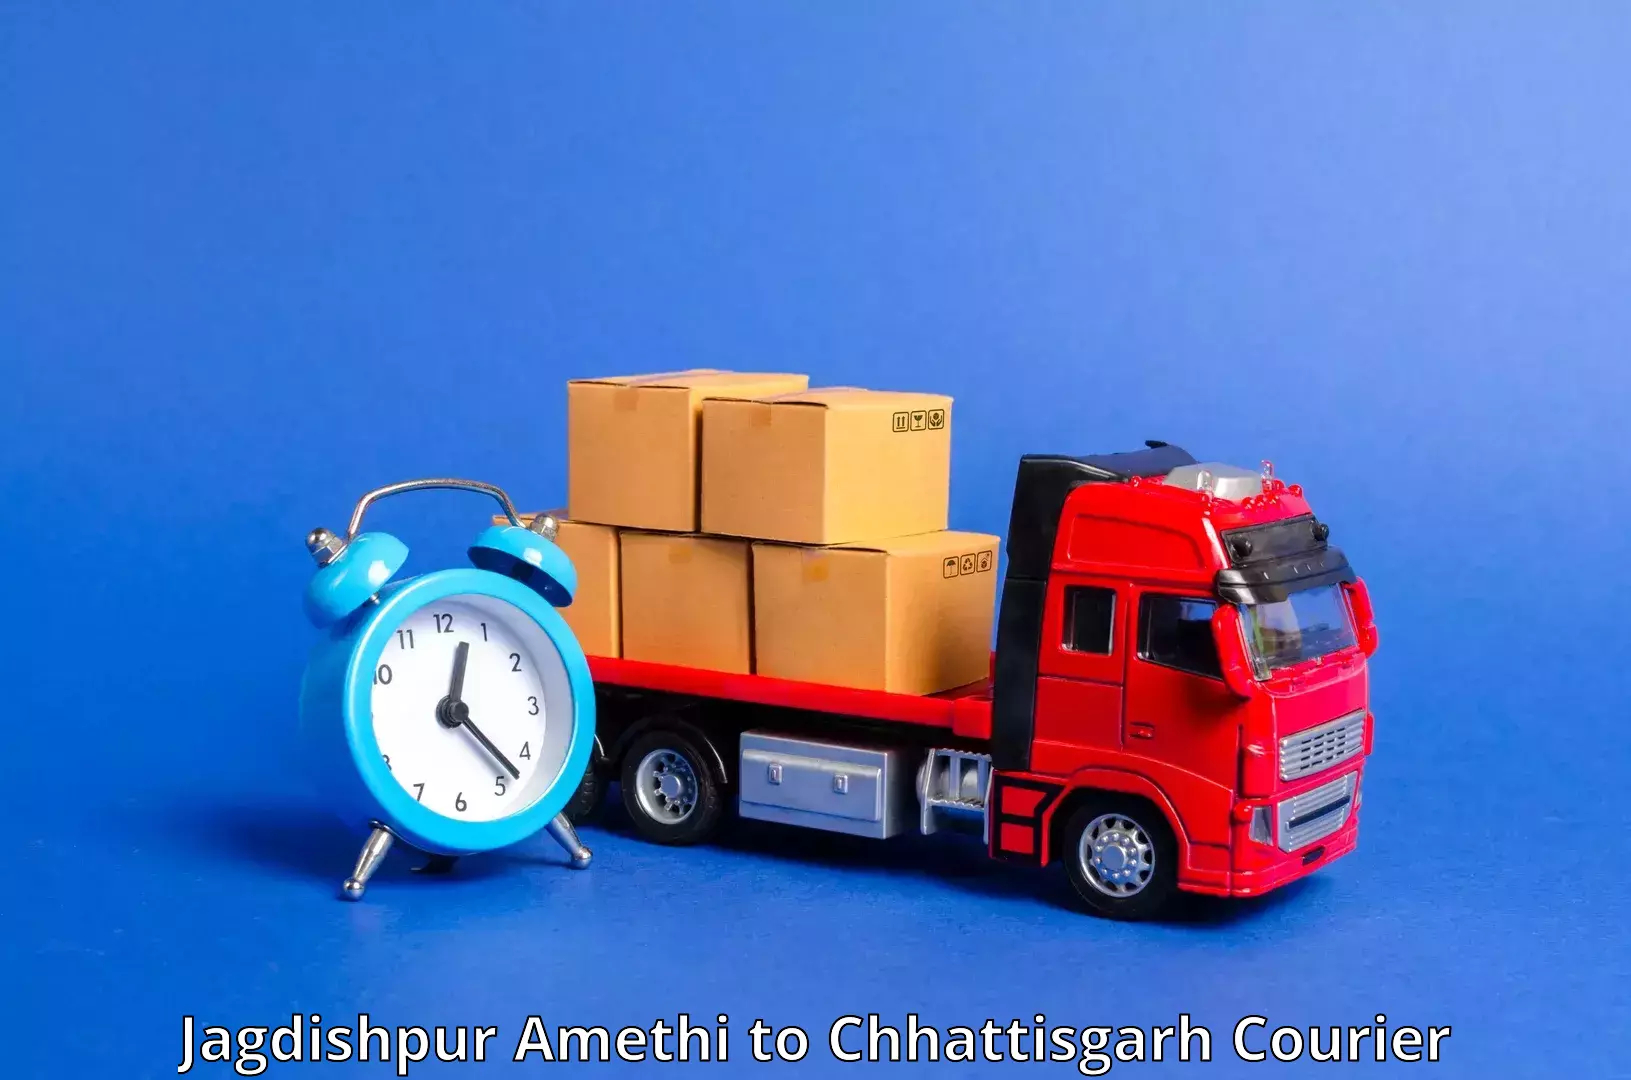 Multi-service courier options Jagdishpur Amethi to Sirpur